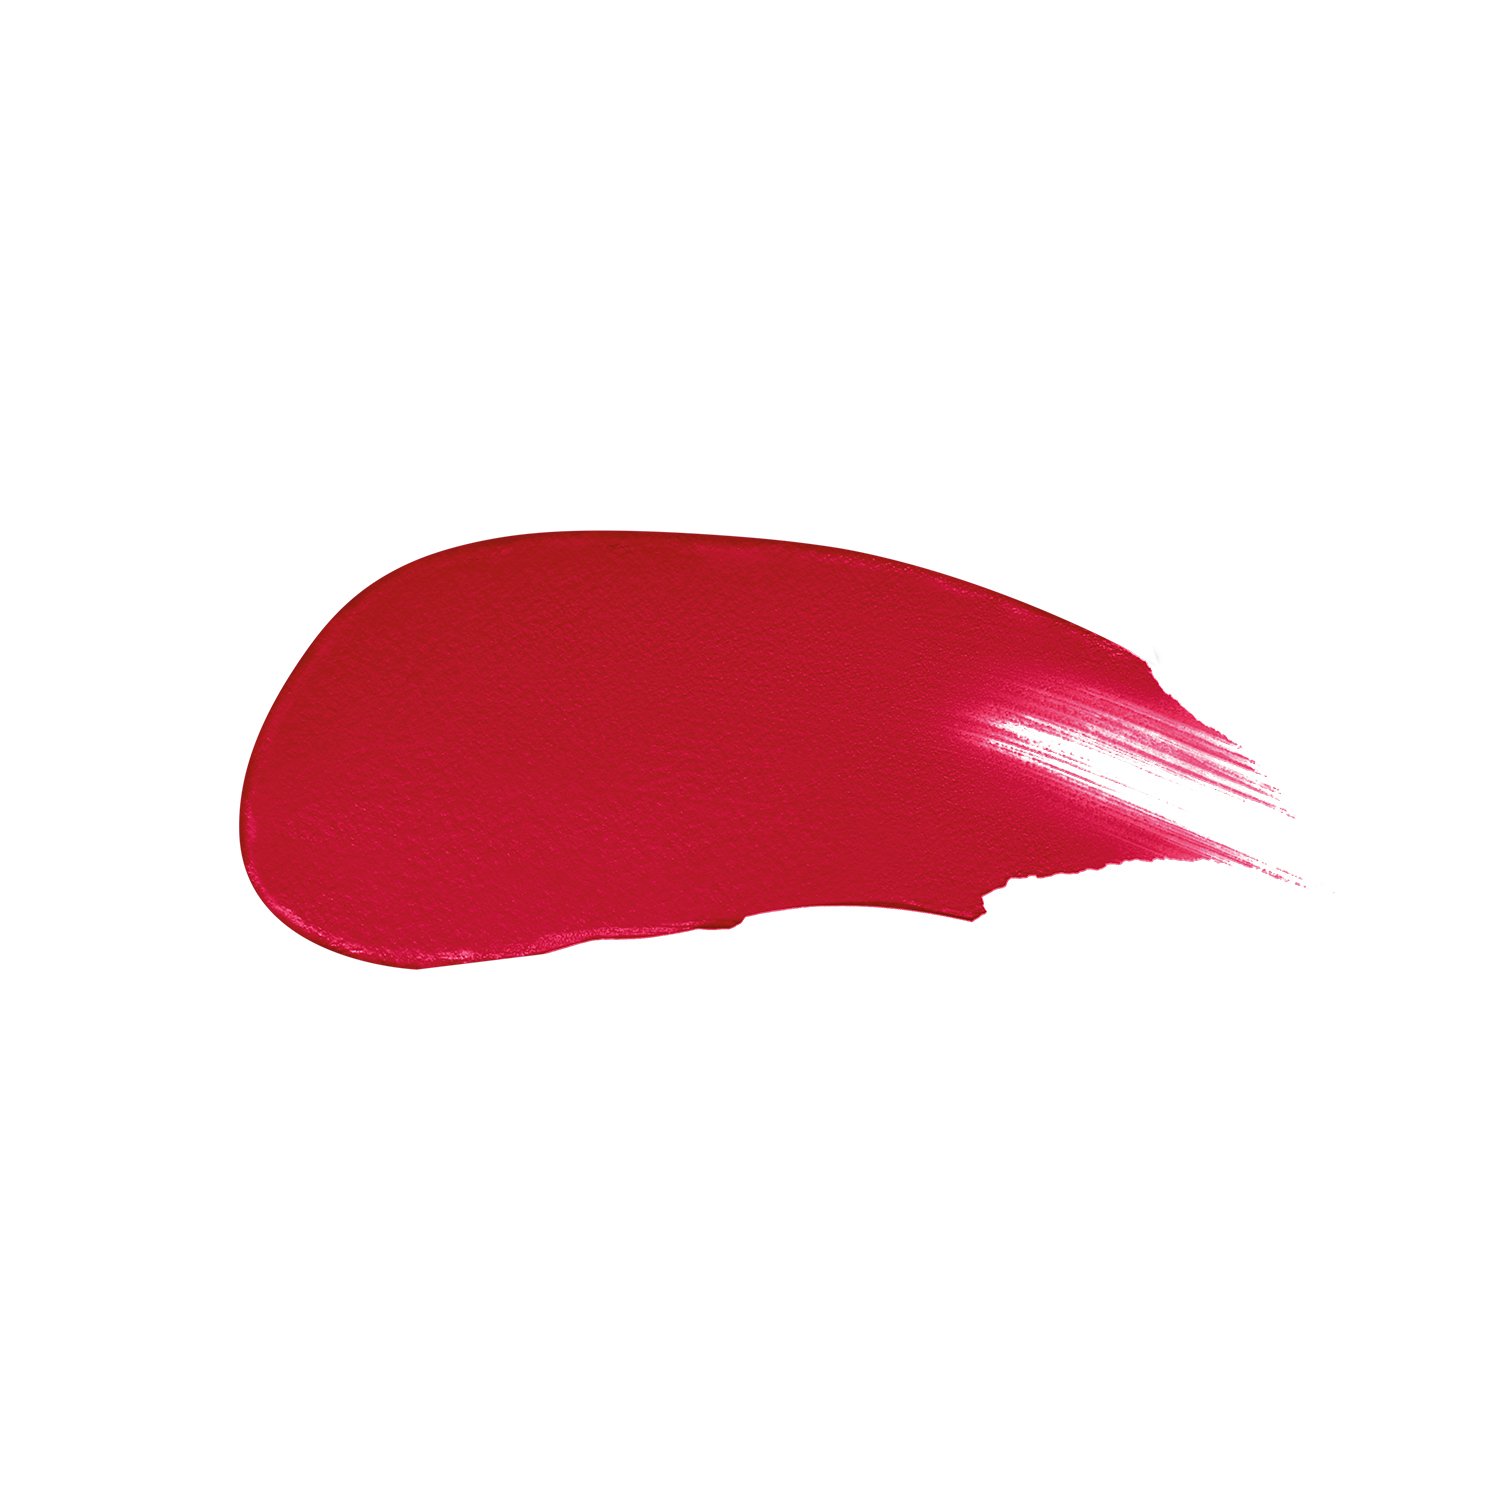 Жидкая помада для губ Max Factor Colour Elixi Matte Soft, тон 030 (Crushed Ruby), 4 мл (8000019533138) - фото 2